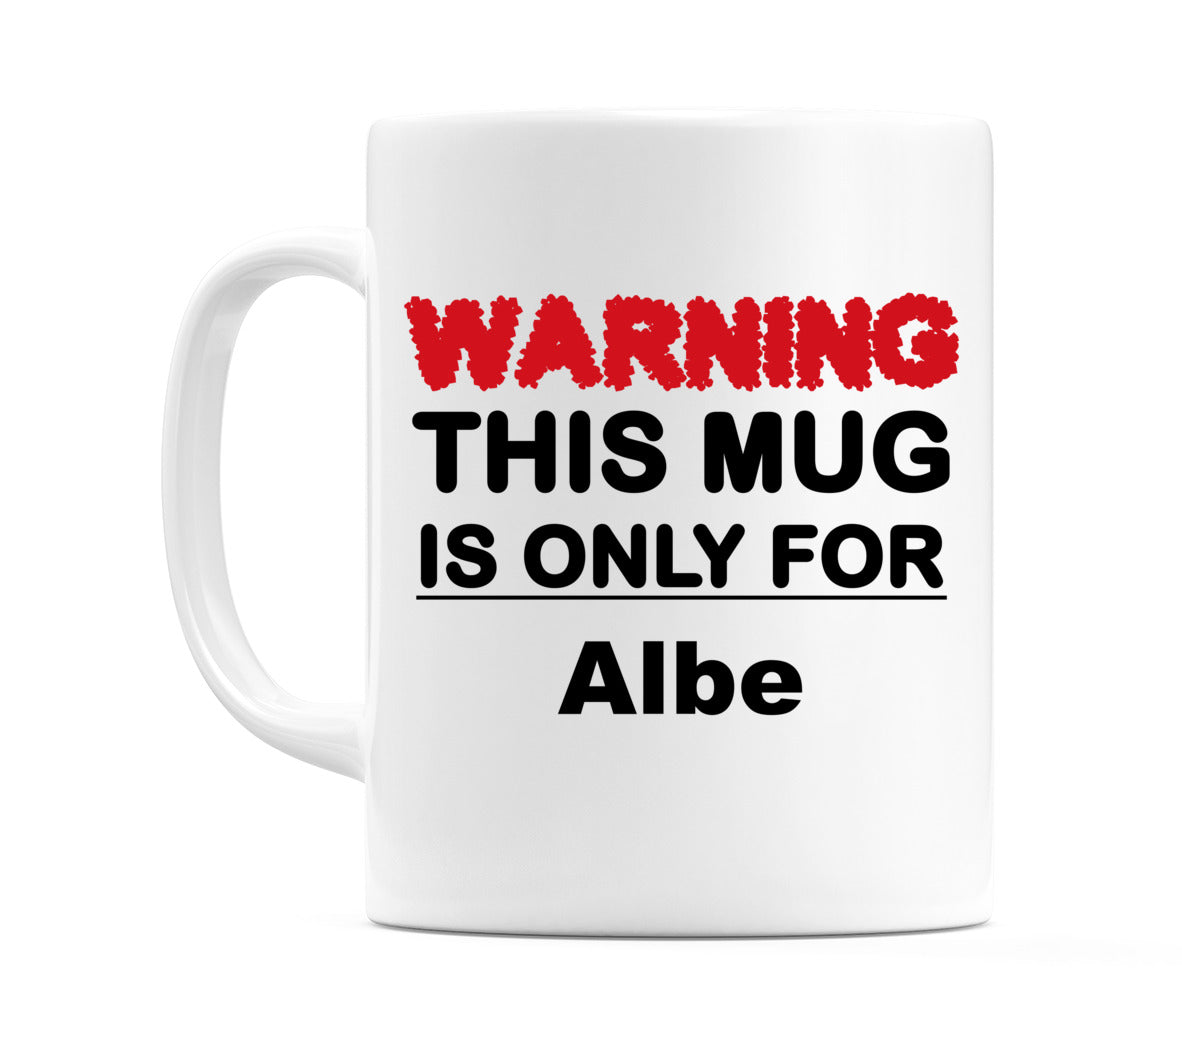 Warning This Mug is ONLY for Albe Mug